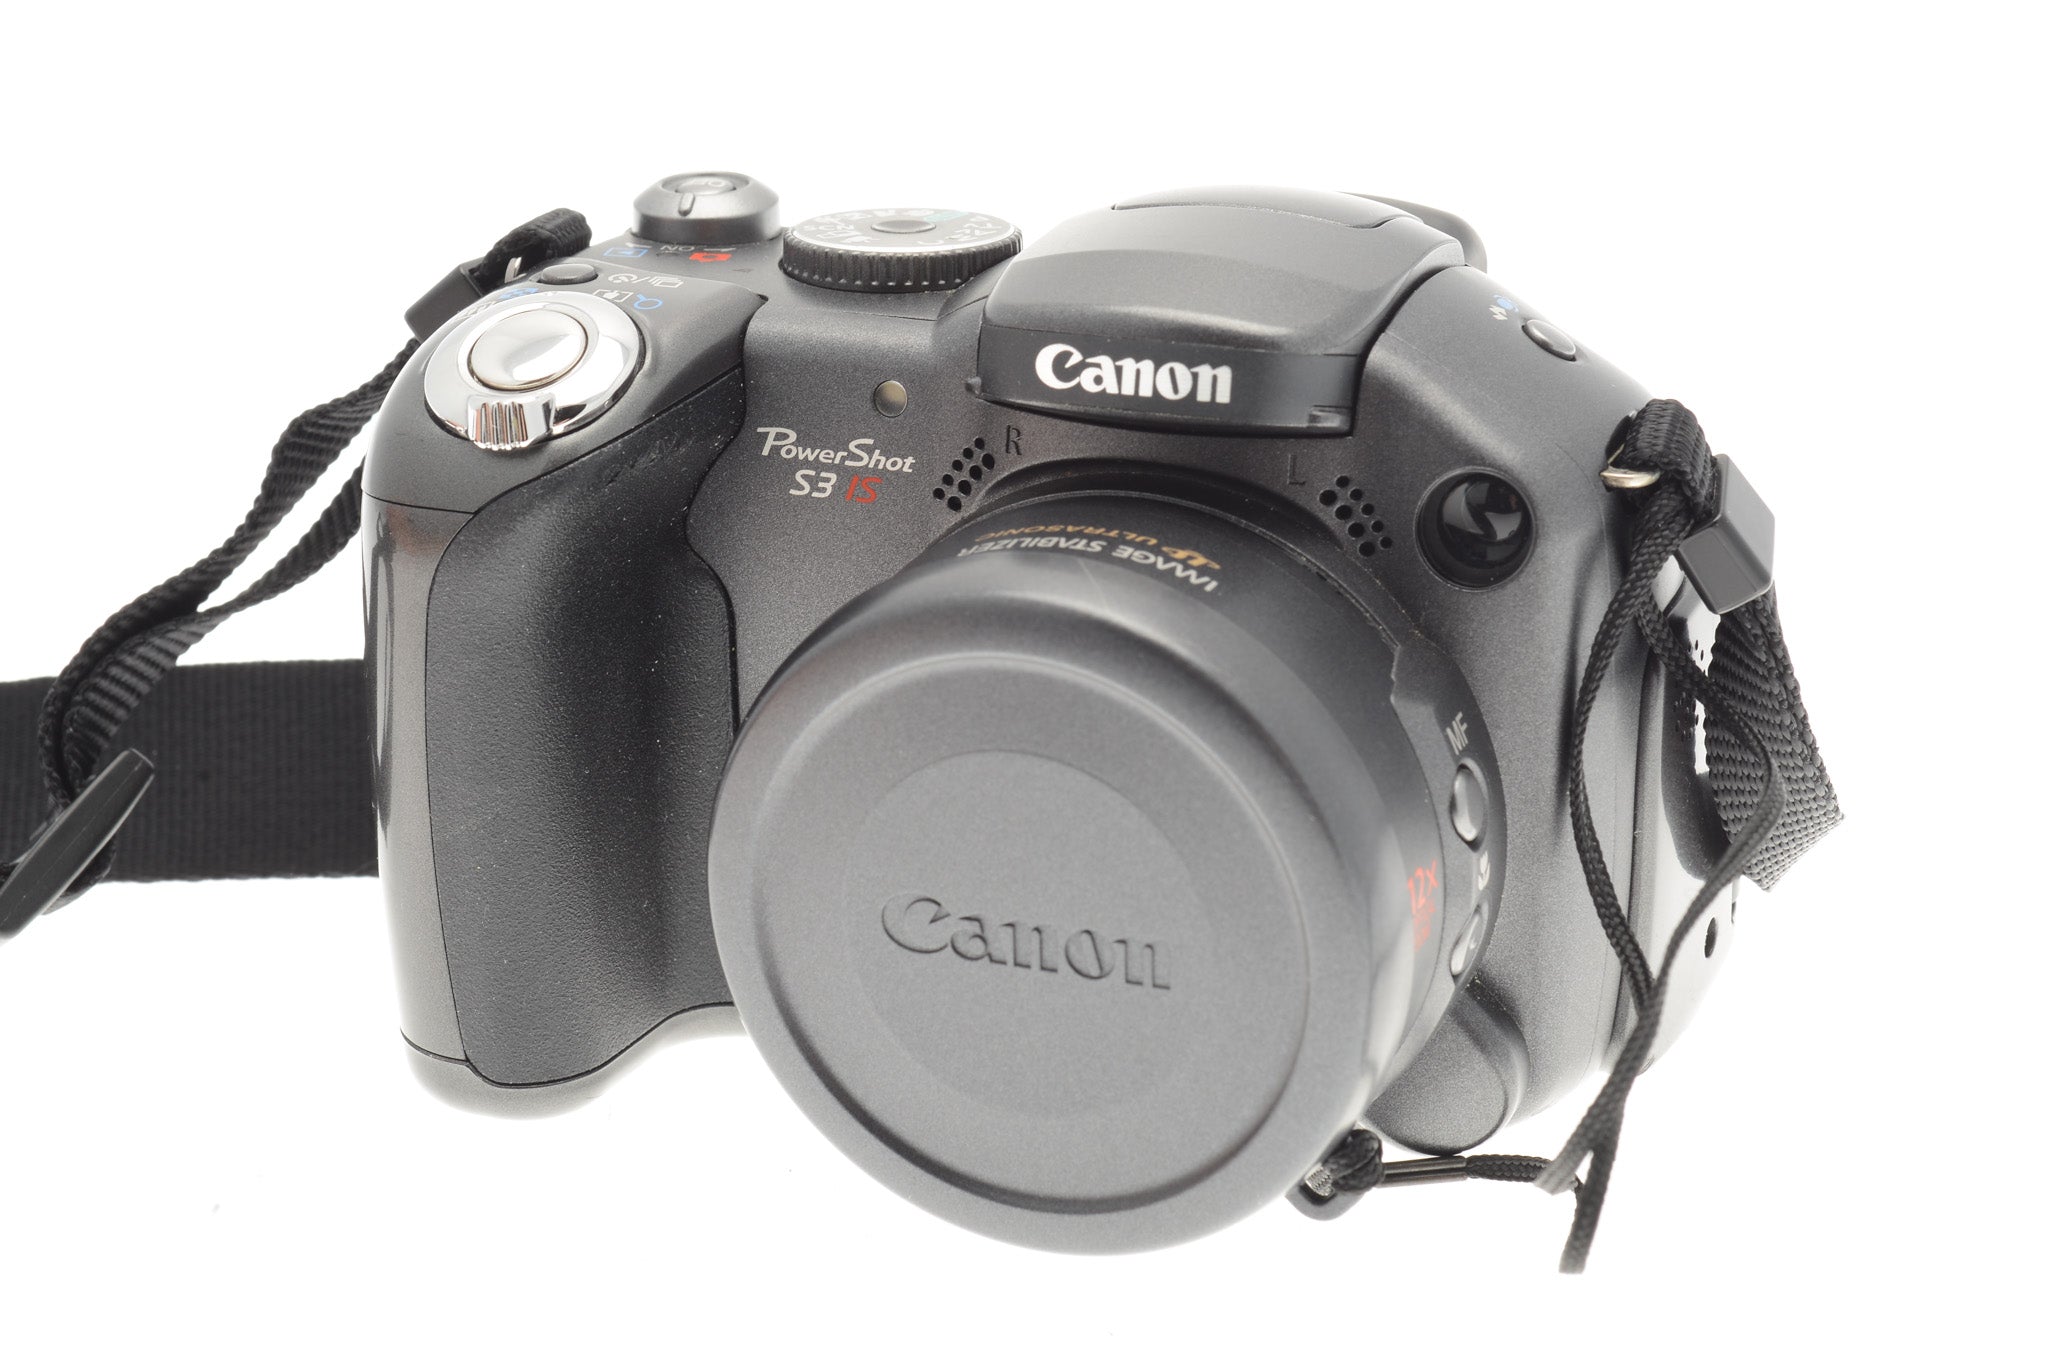 Interactie Bezighouden moersleutel Canon PowerShot S3 IS - Camera – Kamerastore